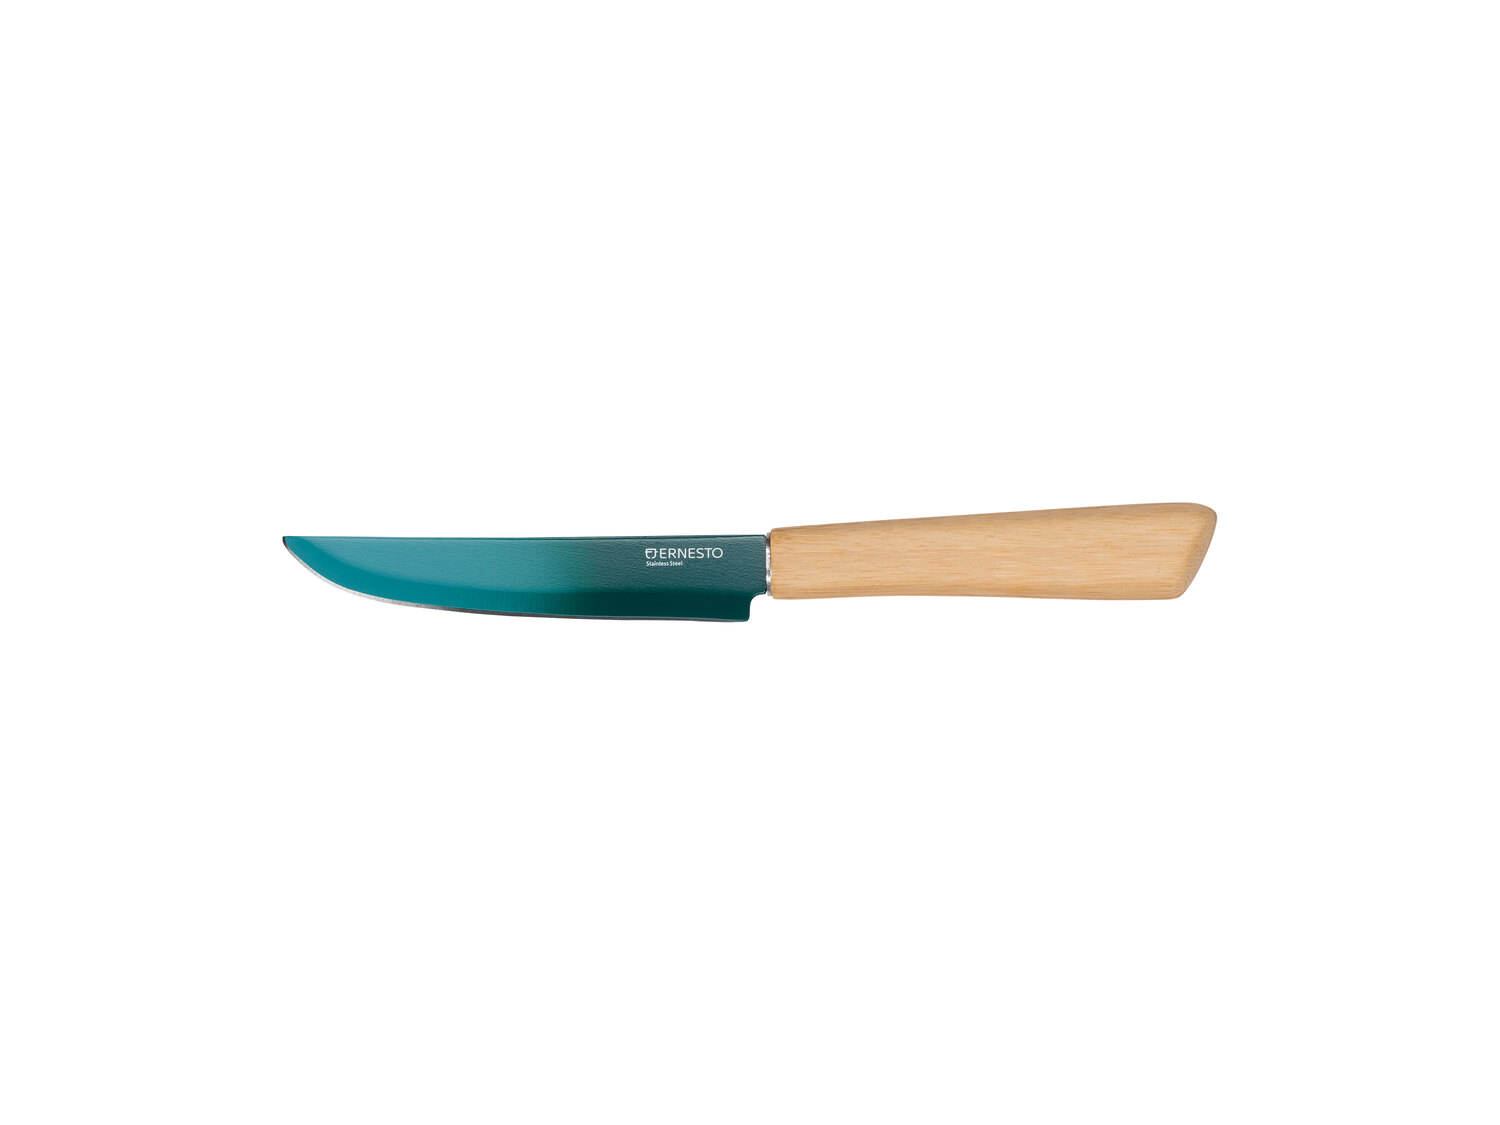 Zestaw noży Ernesto, cena 19,99 PLN 
- bambusowy uchwyt
- dł. ostrza: 12,5 cm
- ...